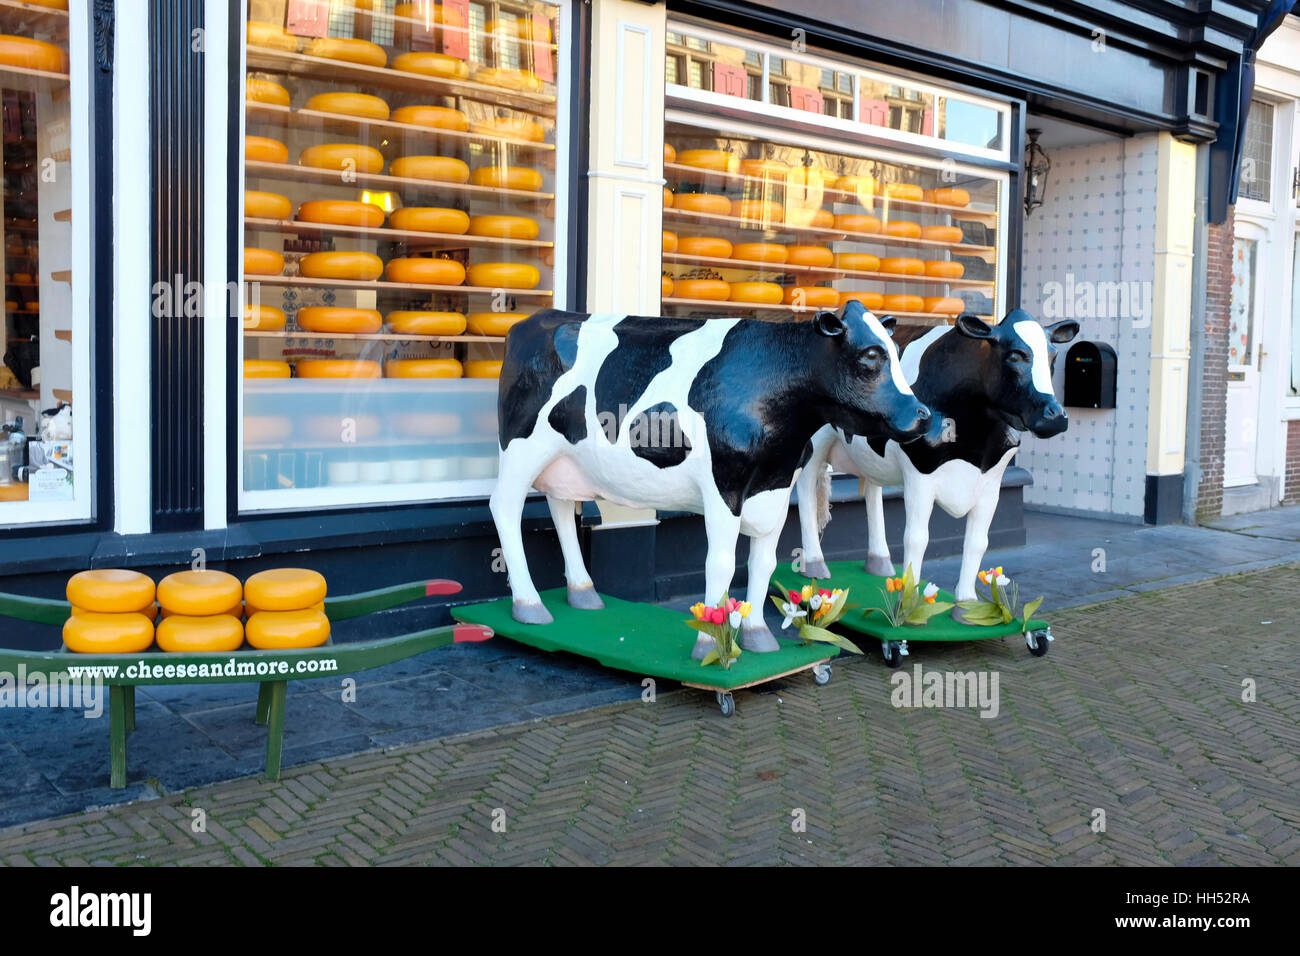 Tienda de quesos holandeses, la ciudad de Delft, Países Bajos. Foto de stock